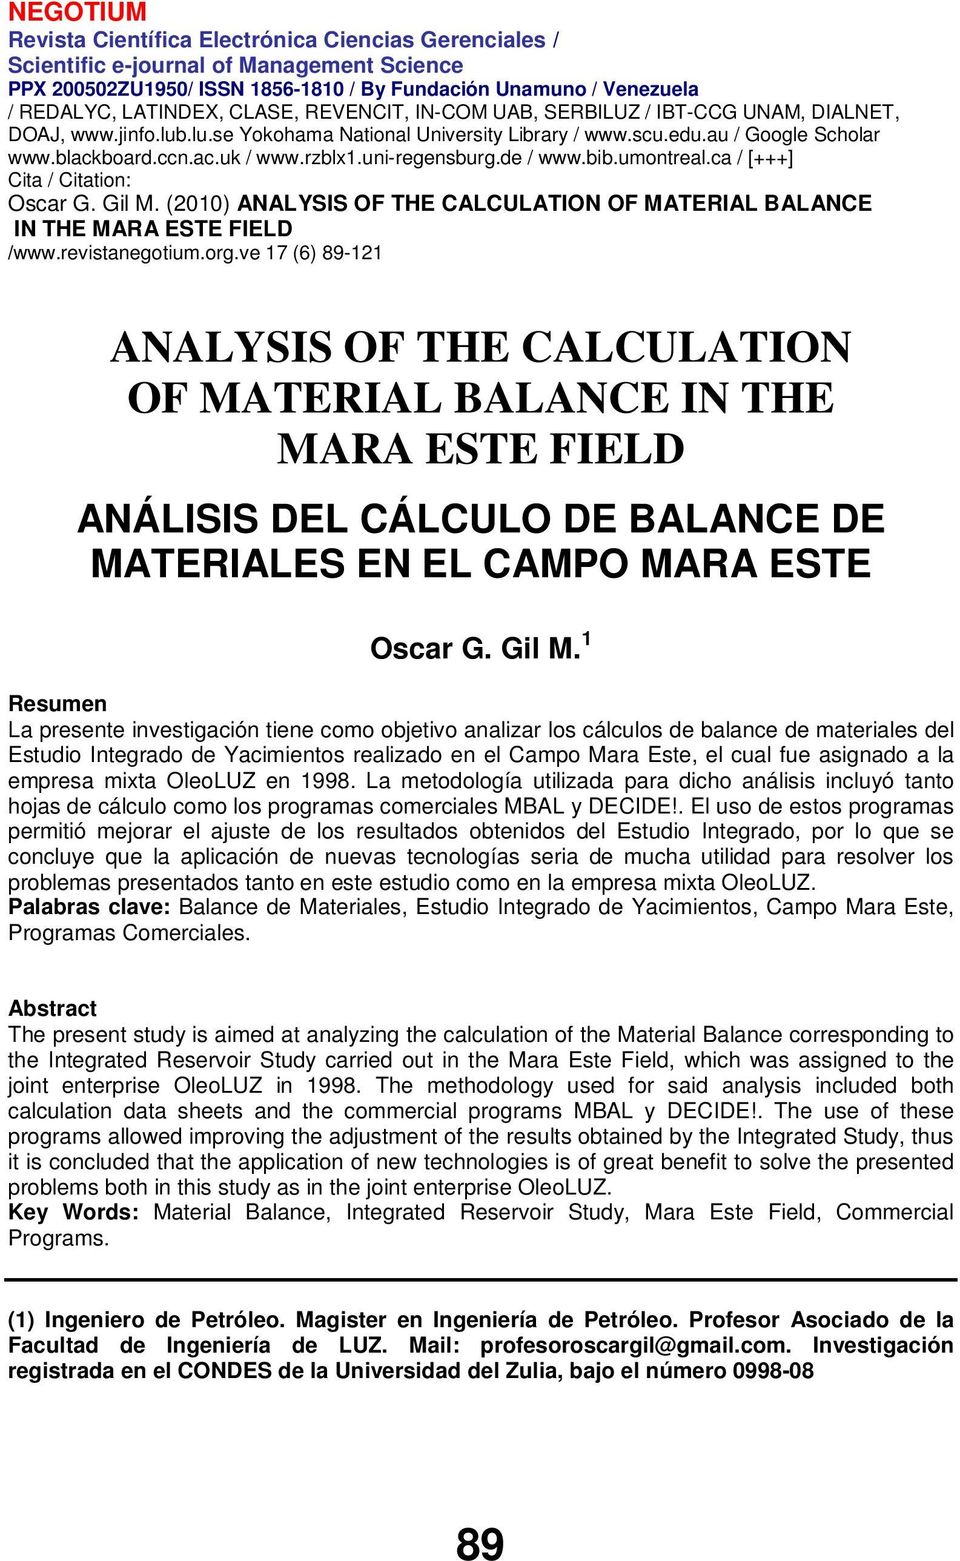 empresa mixta OleoLUZ en 1998. La metodología utilizada para dicho análisis incluyó tanto hojas de cálculo como los programas comerciales MBAL y DECIDE!